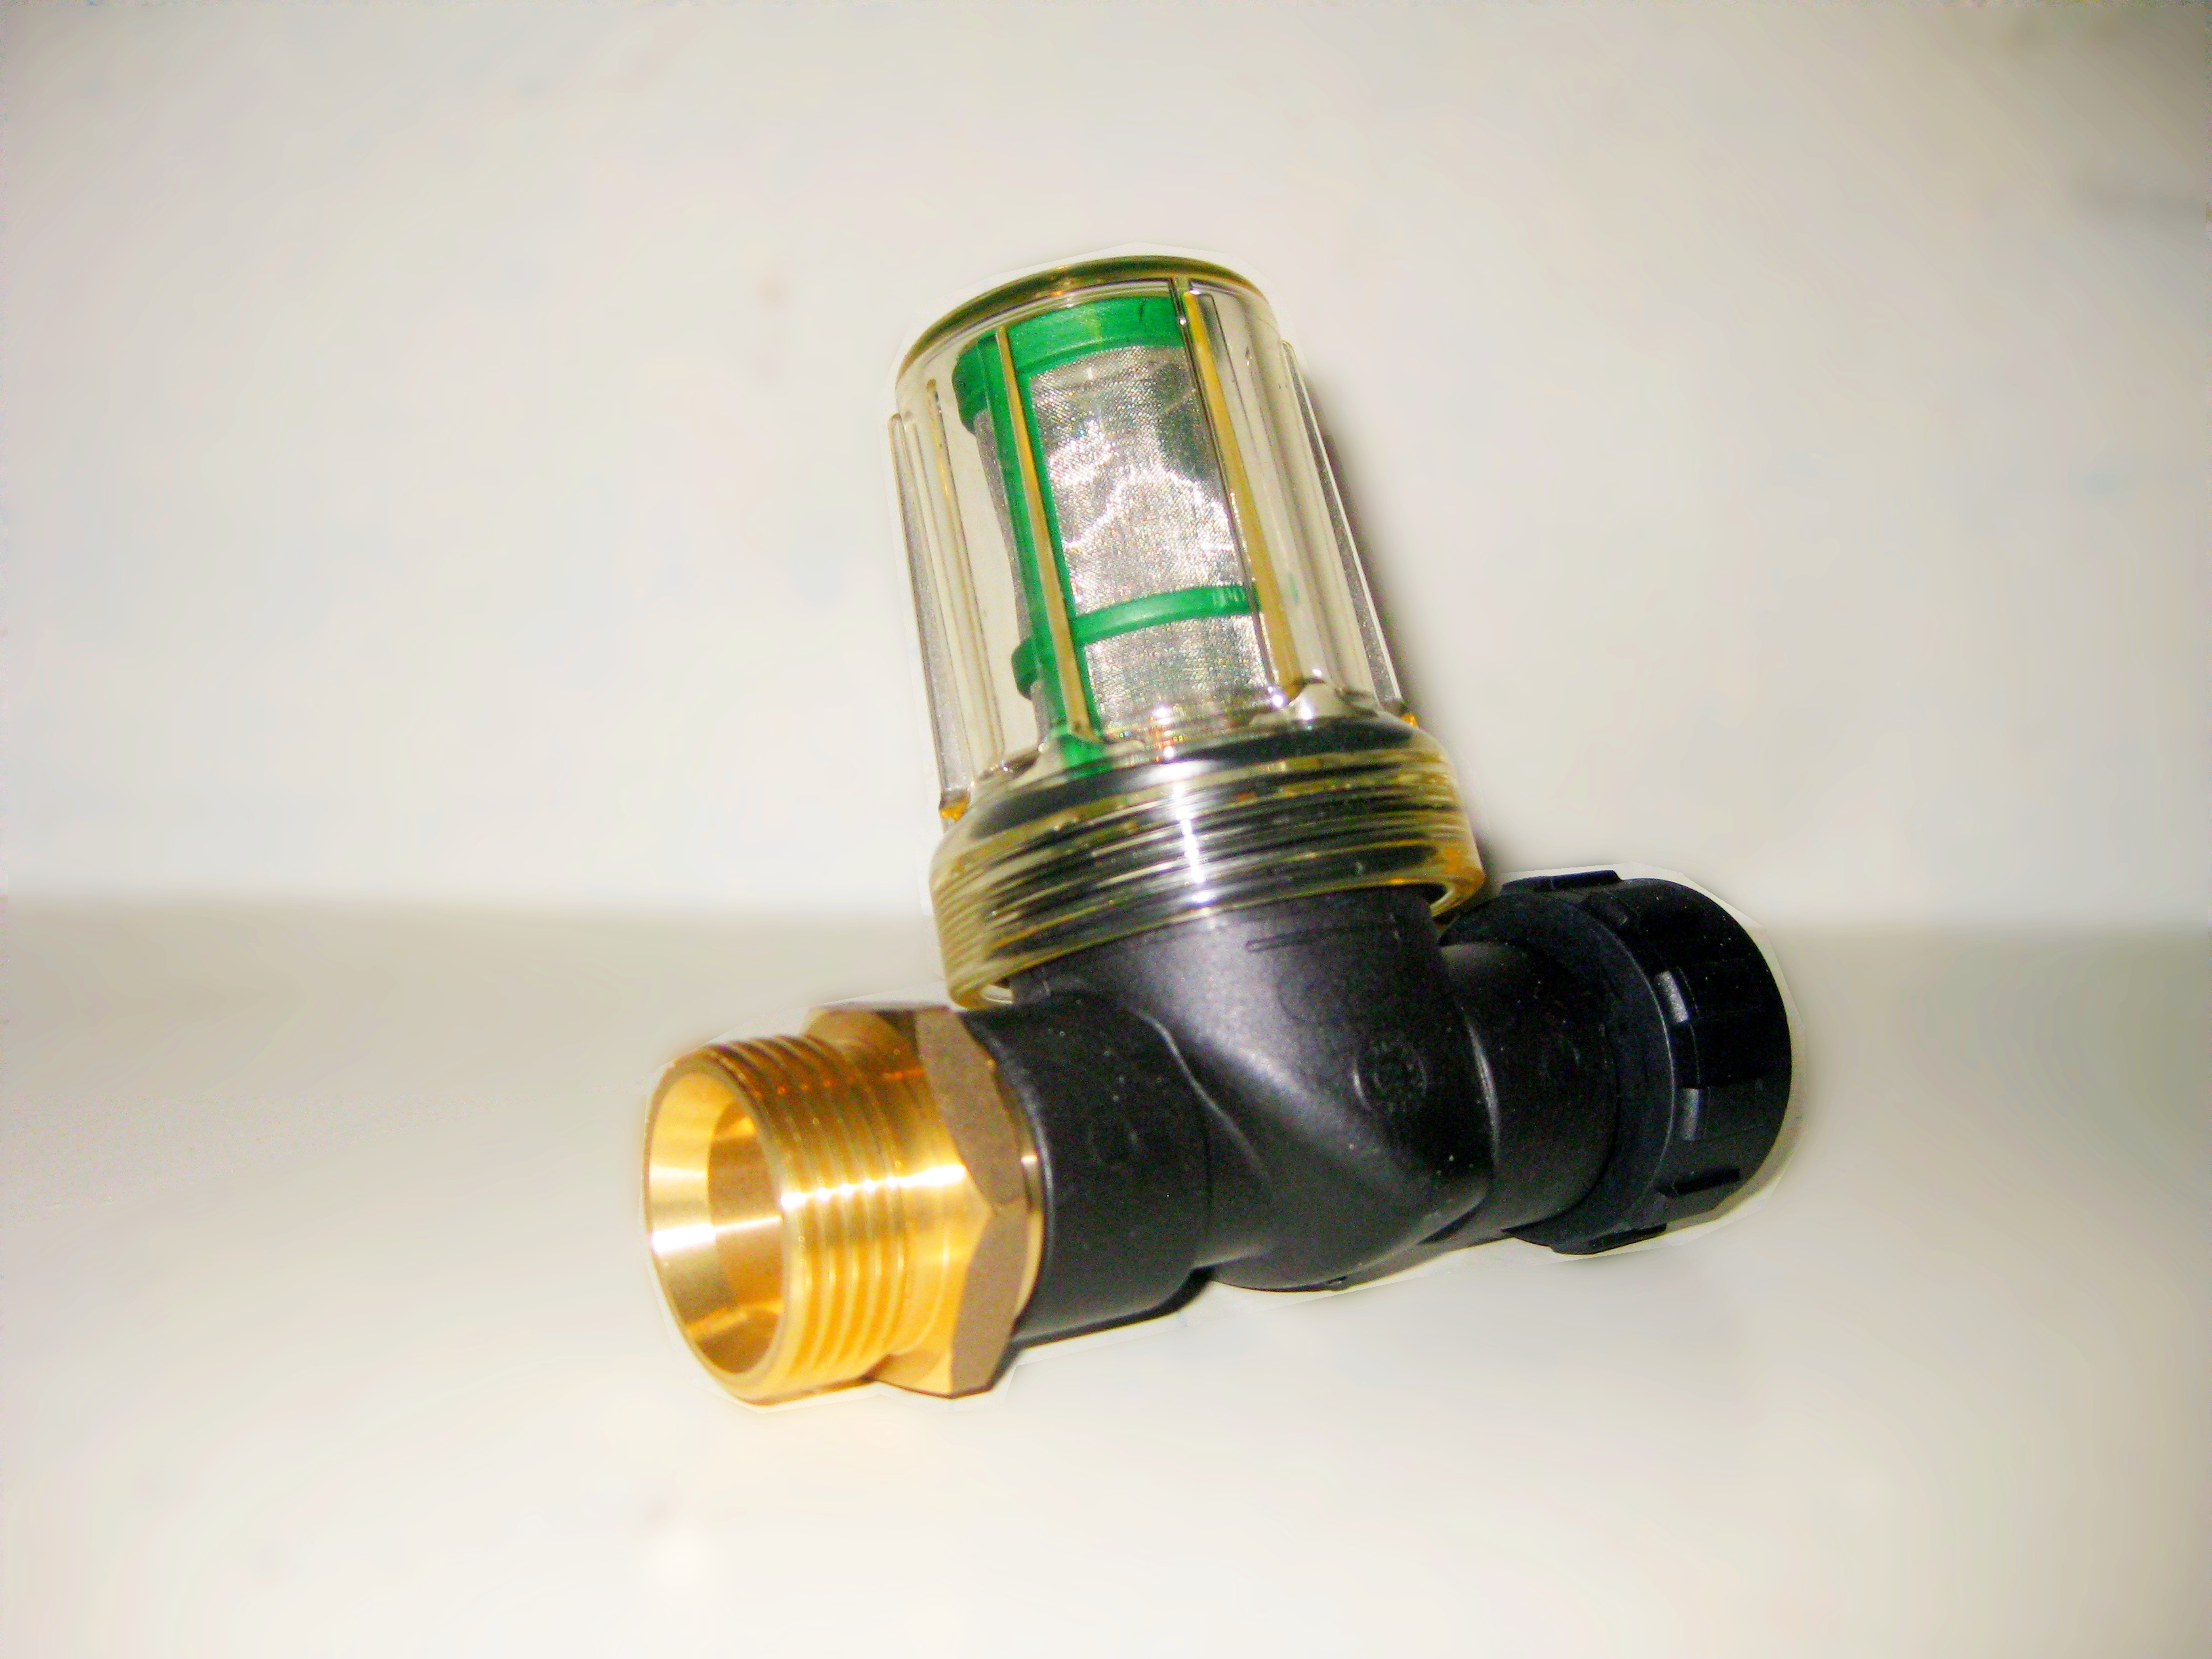 Фильтр для минимойки. Фильтр грубой очистки для мойки высокого давления. Фильтр воды входной на АВД 1 М - 1 П (ZX 7029). Фильтр ZX idrabas для воды Idrobase. Фильтр водяной для мойки высокого давления (Mini).